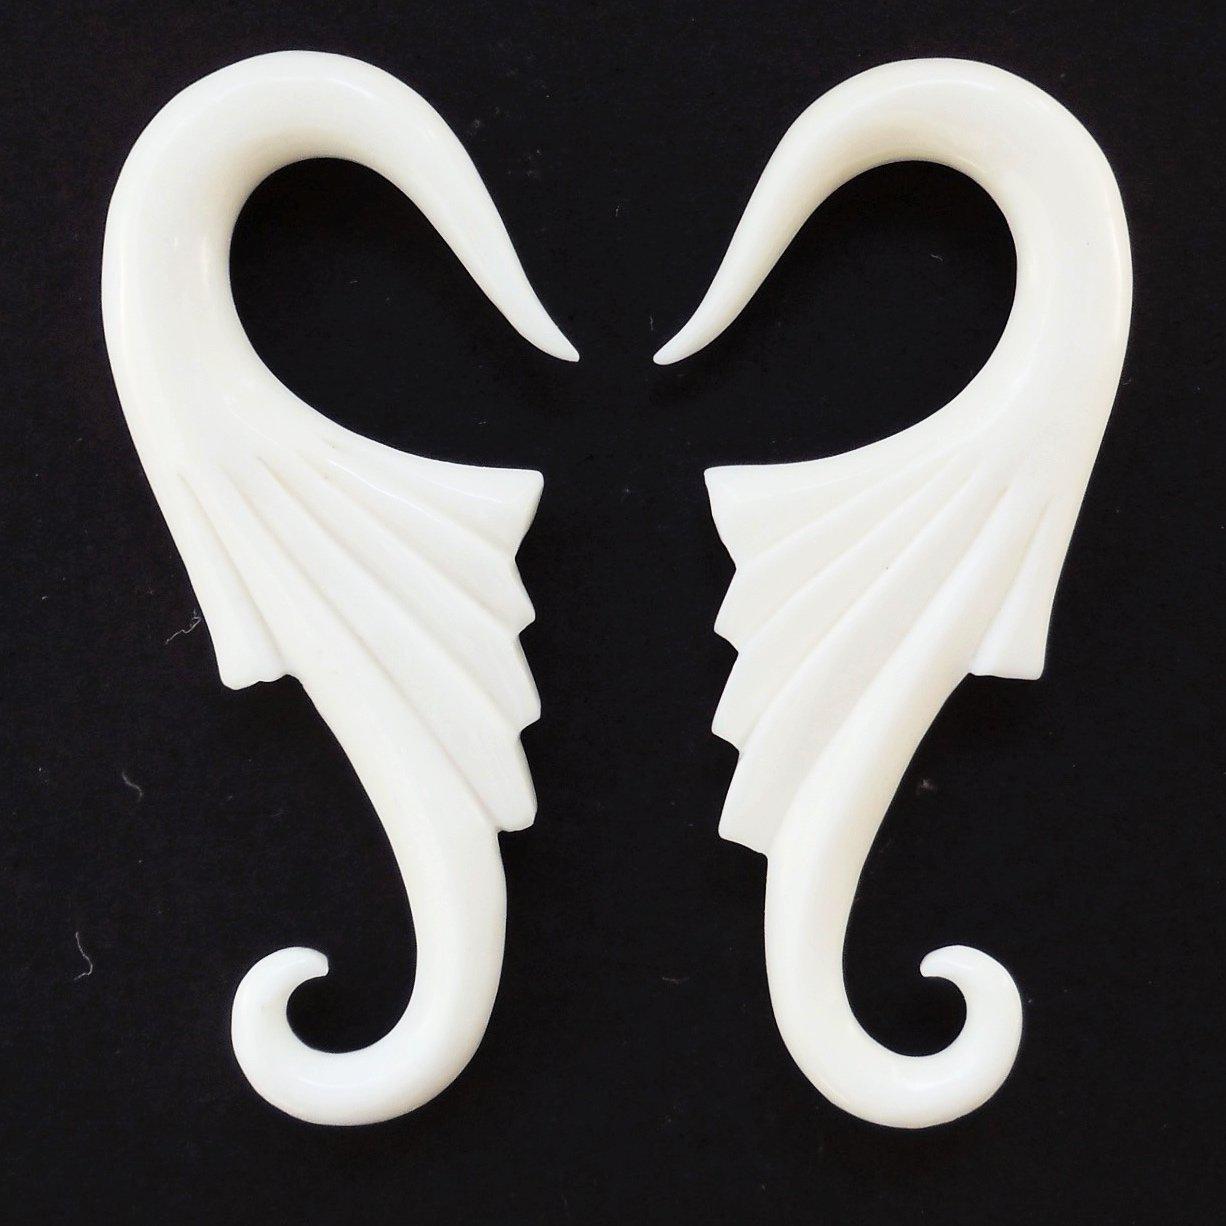 Gauge Earrings :|: Wings. Bone 4g gauge earrings.